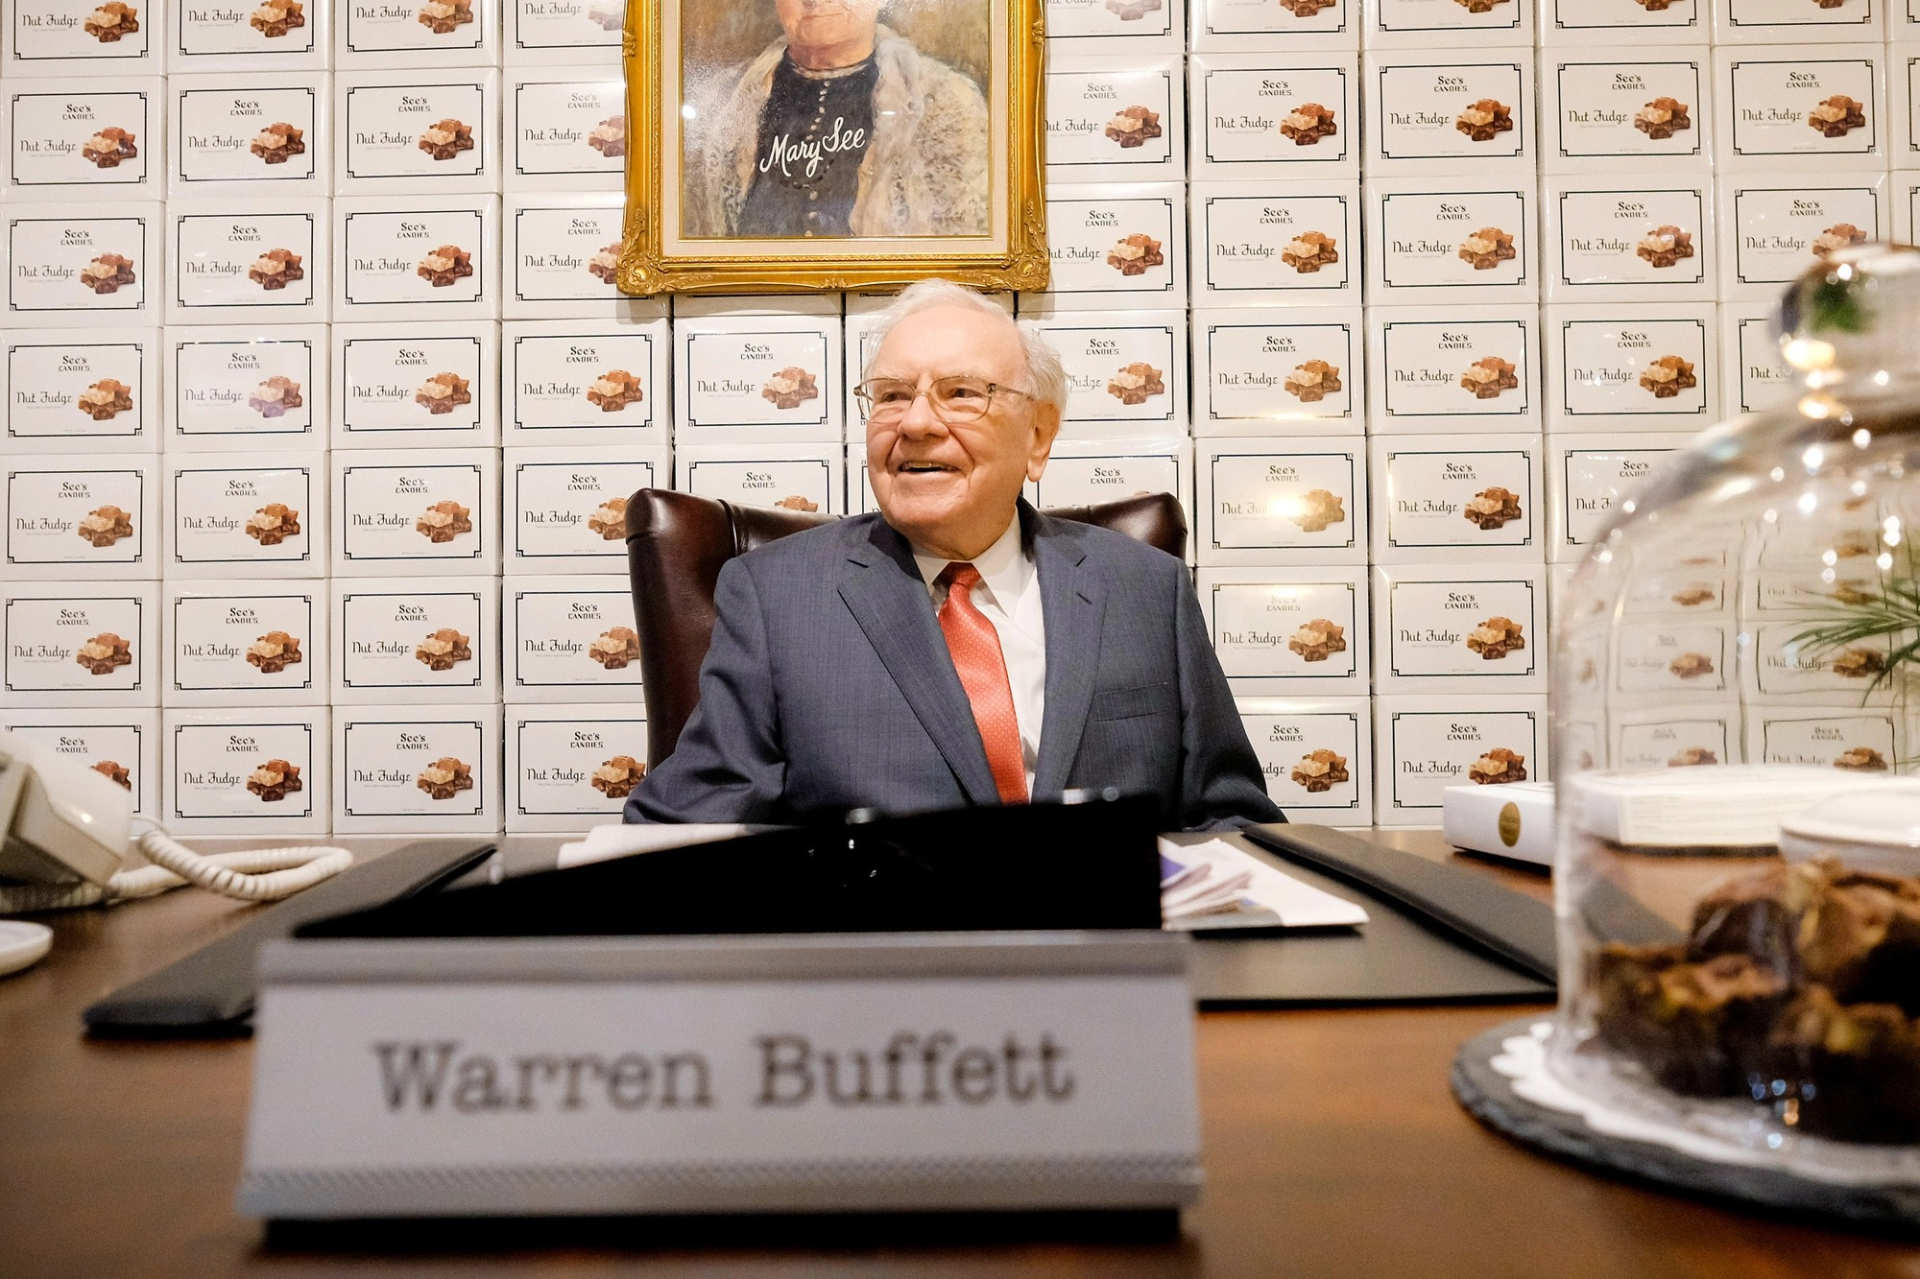 Warren Buffet và tâm niệm làm việc vì đam mê: Từng bỏ qua việc hỏi lương, cuối tháng mới biết nhận bao nhiêu tiền